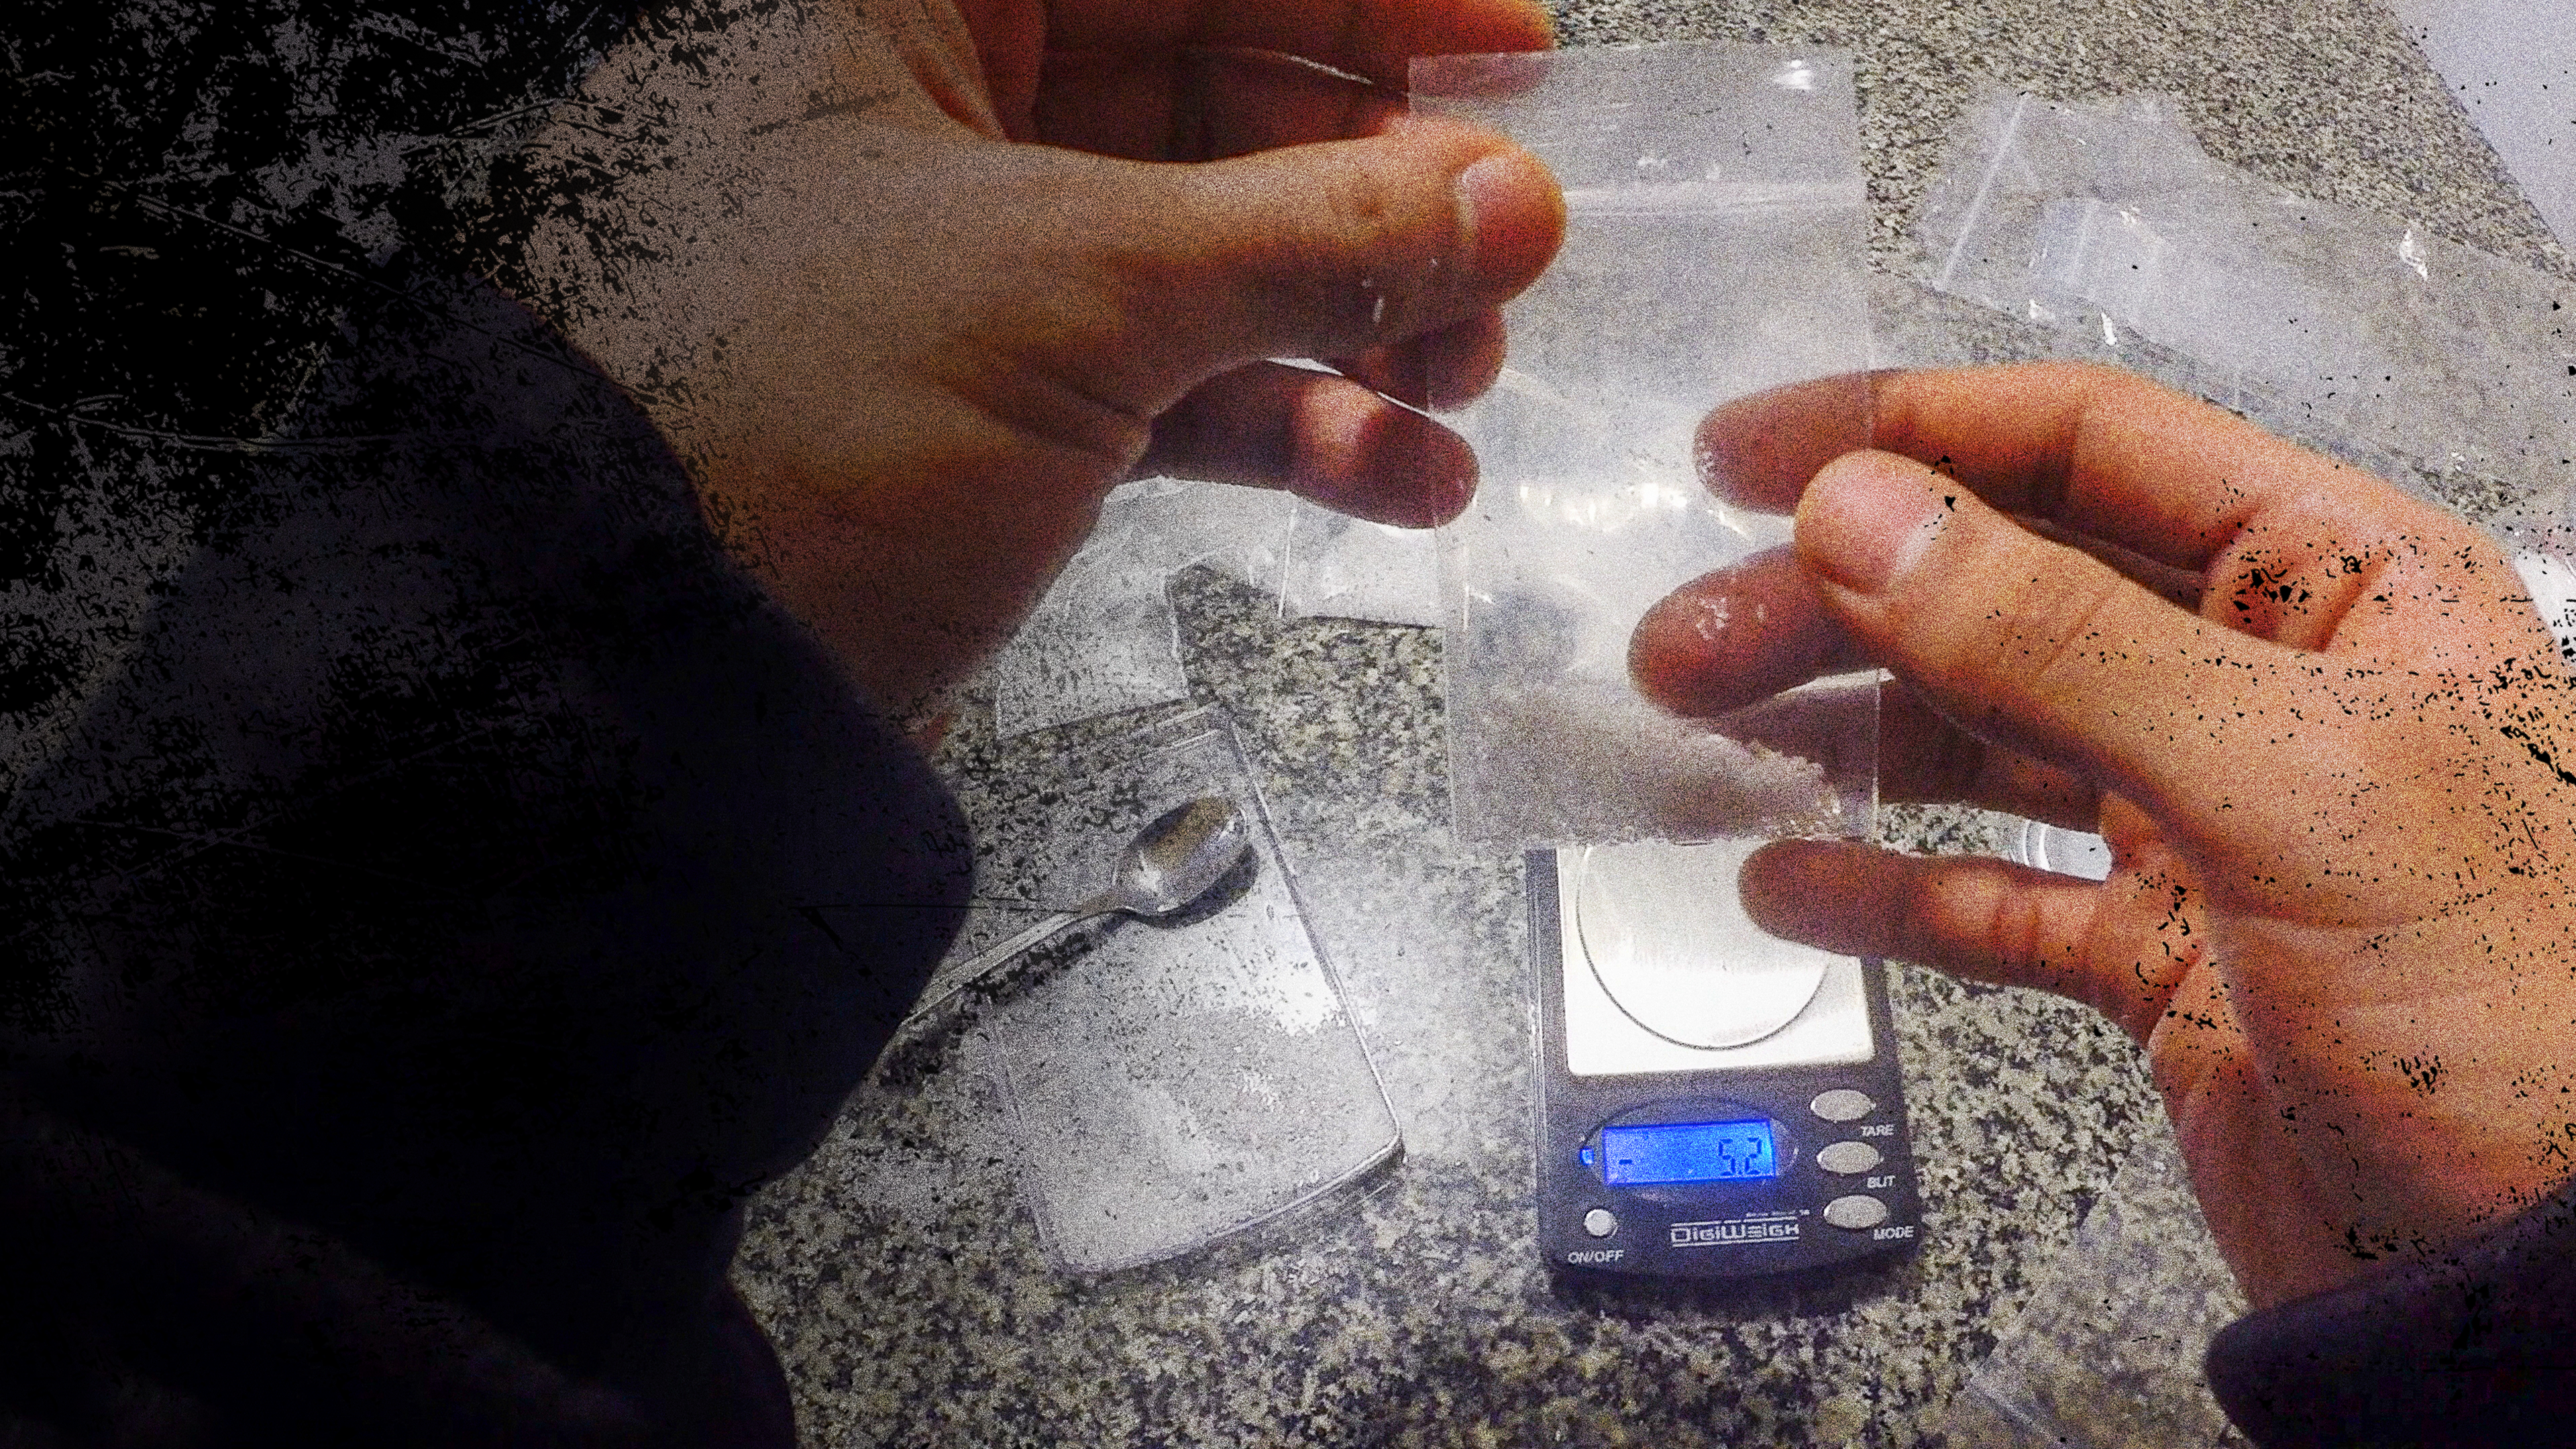 Drugs Inc: Drogen im Visier